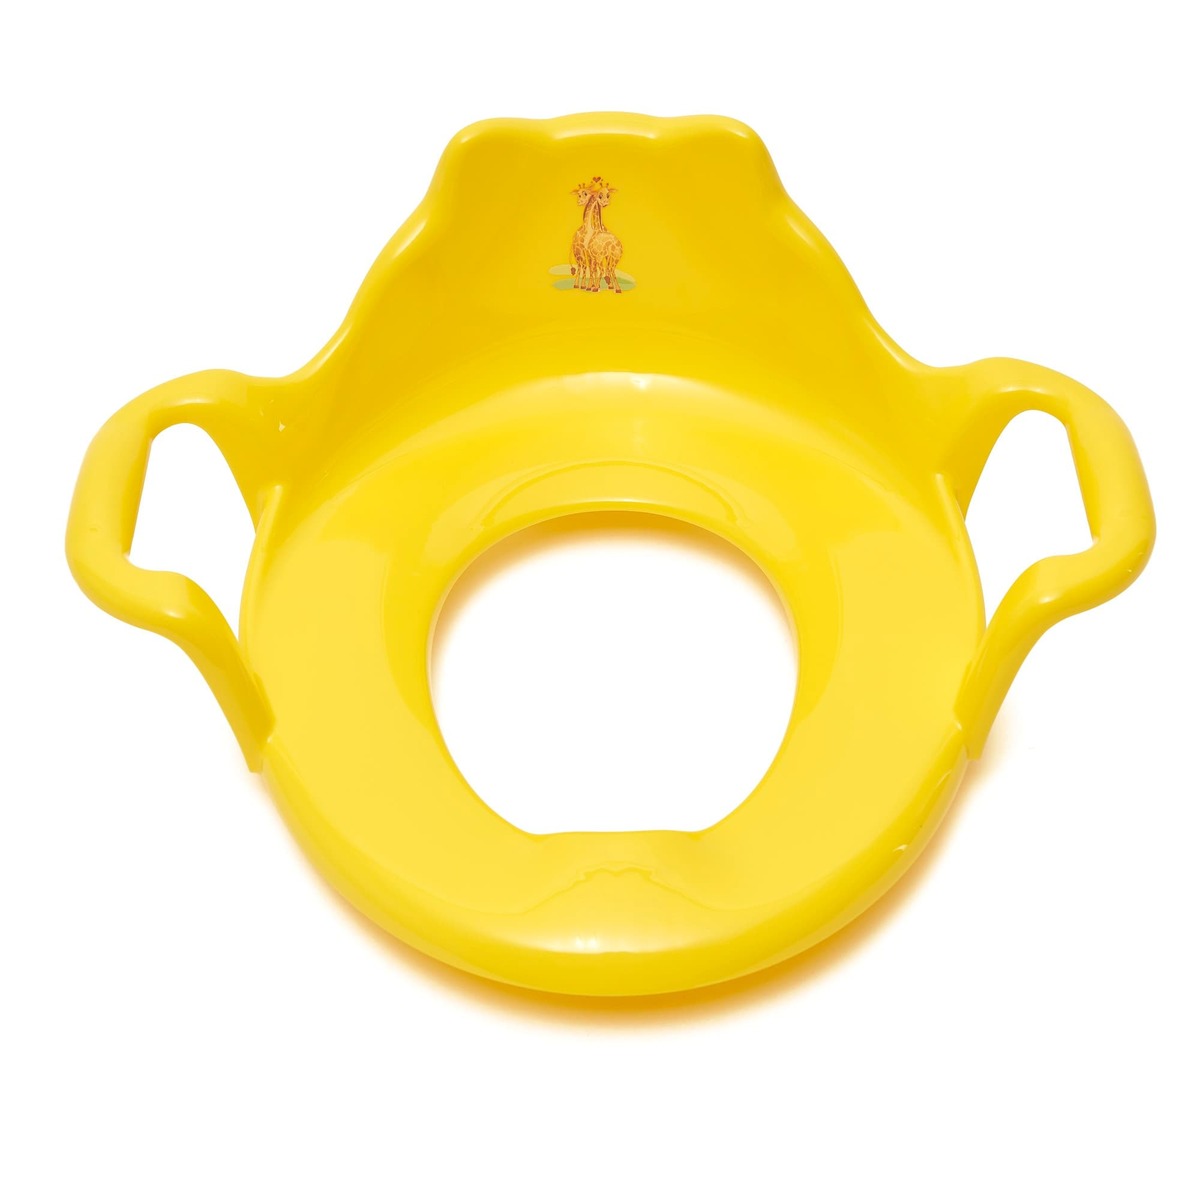 WC prkénko pro děti žluté BABYYELLOW SIKO